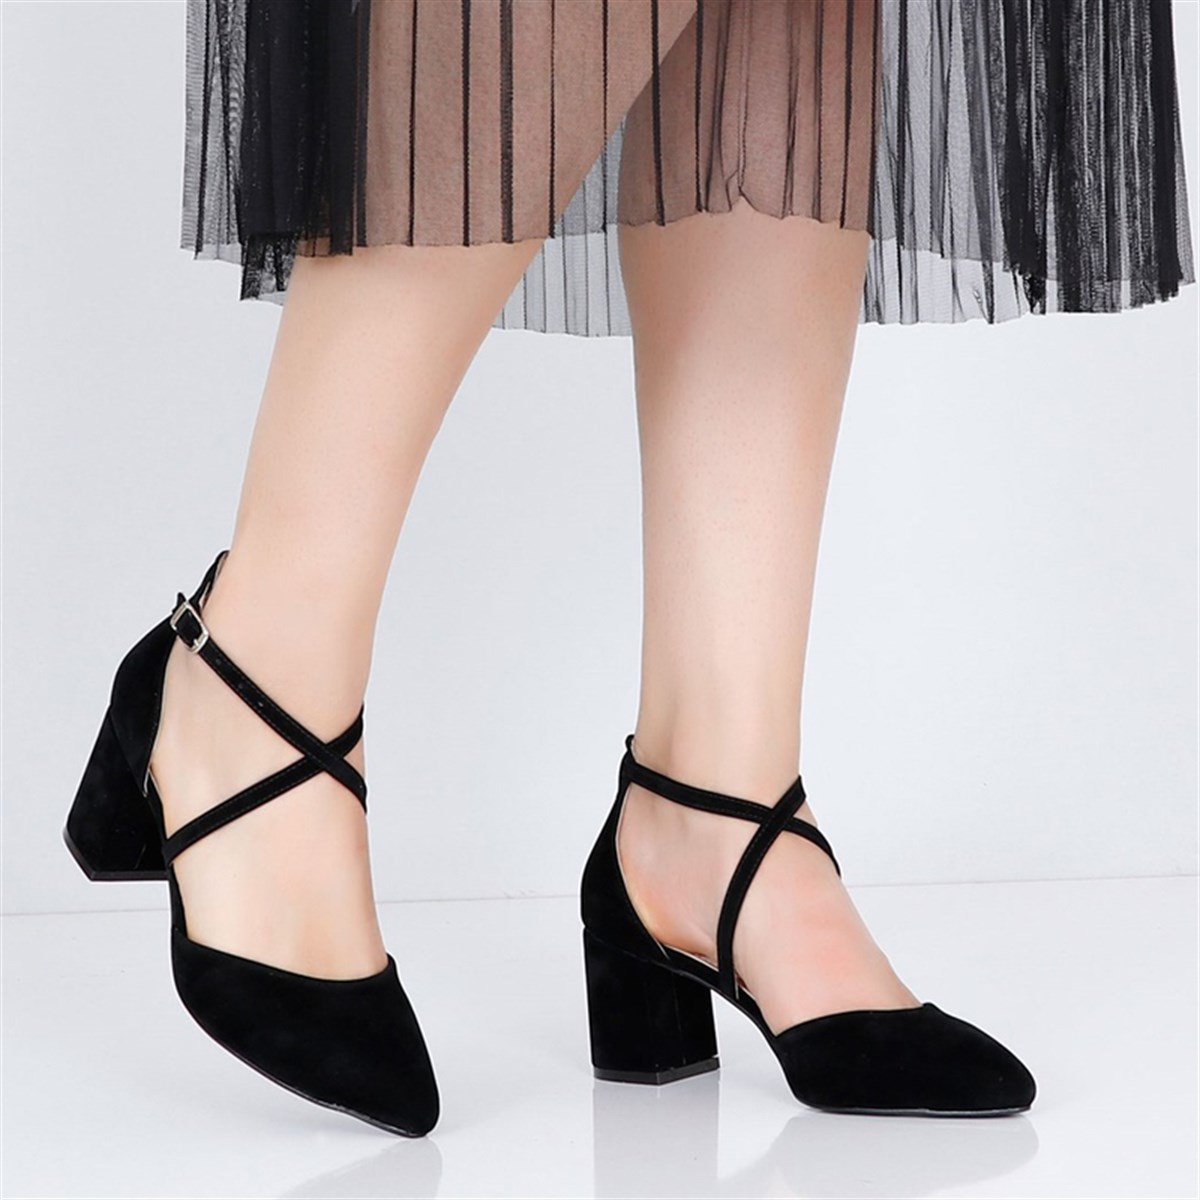 Siyah süet Alçak Topuklu Kadın Ayakkabı 064Y Fiyatı ve Modelleri